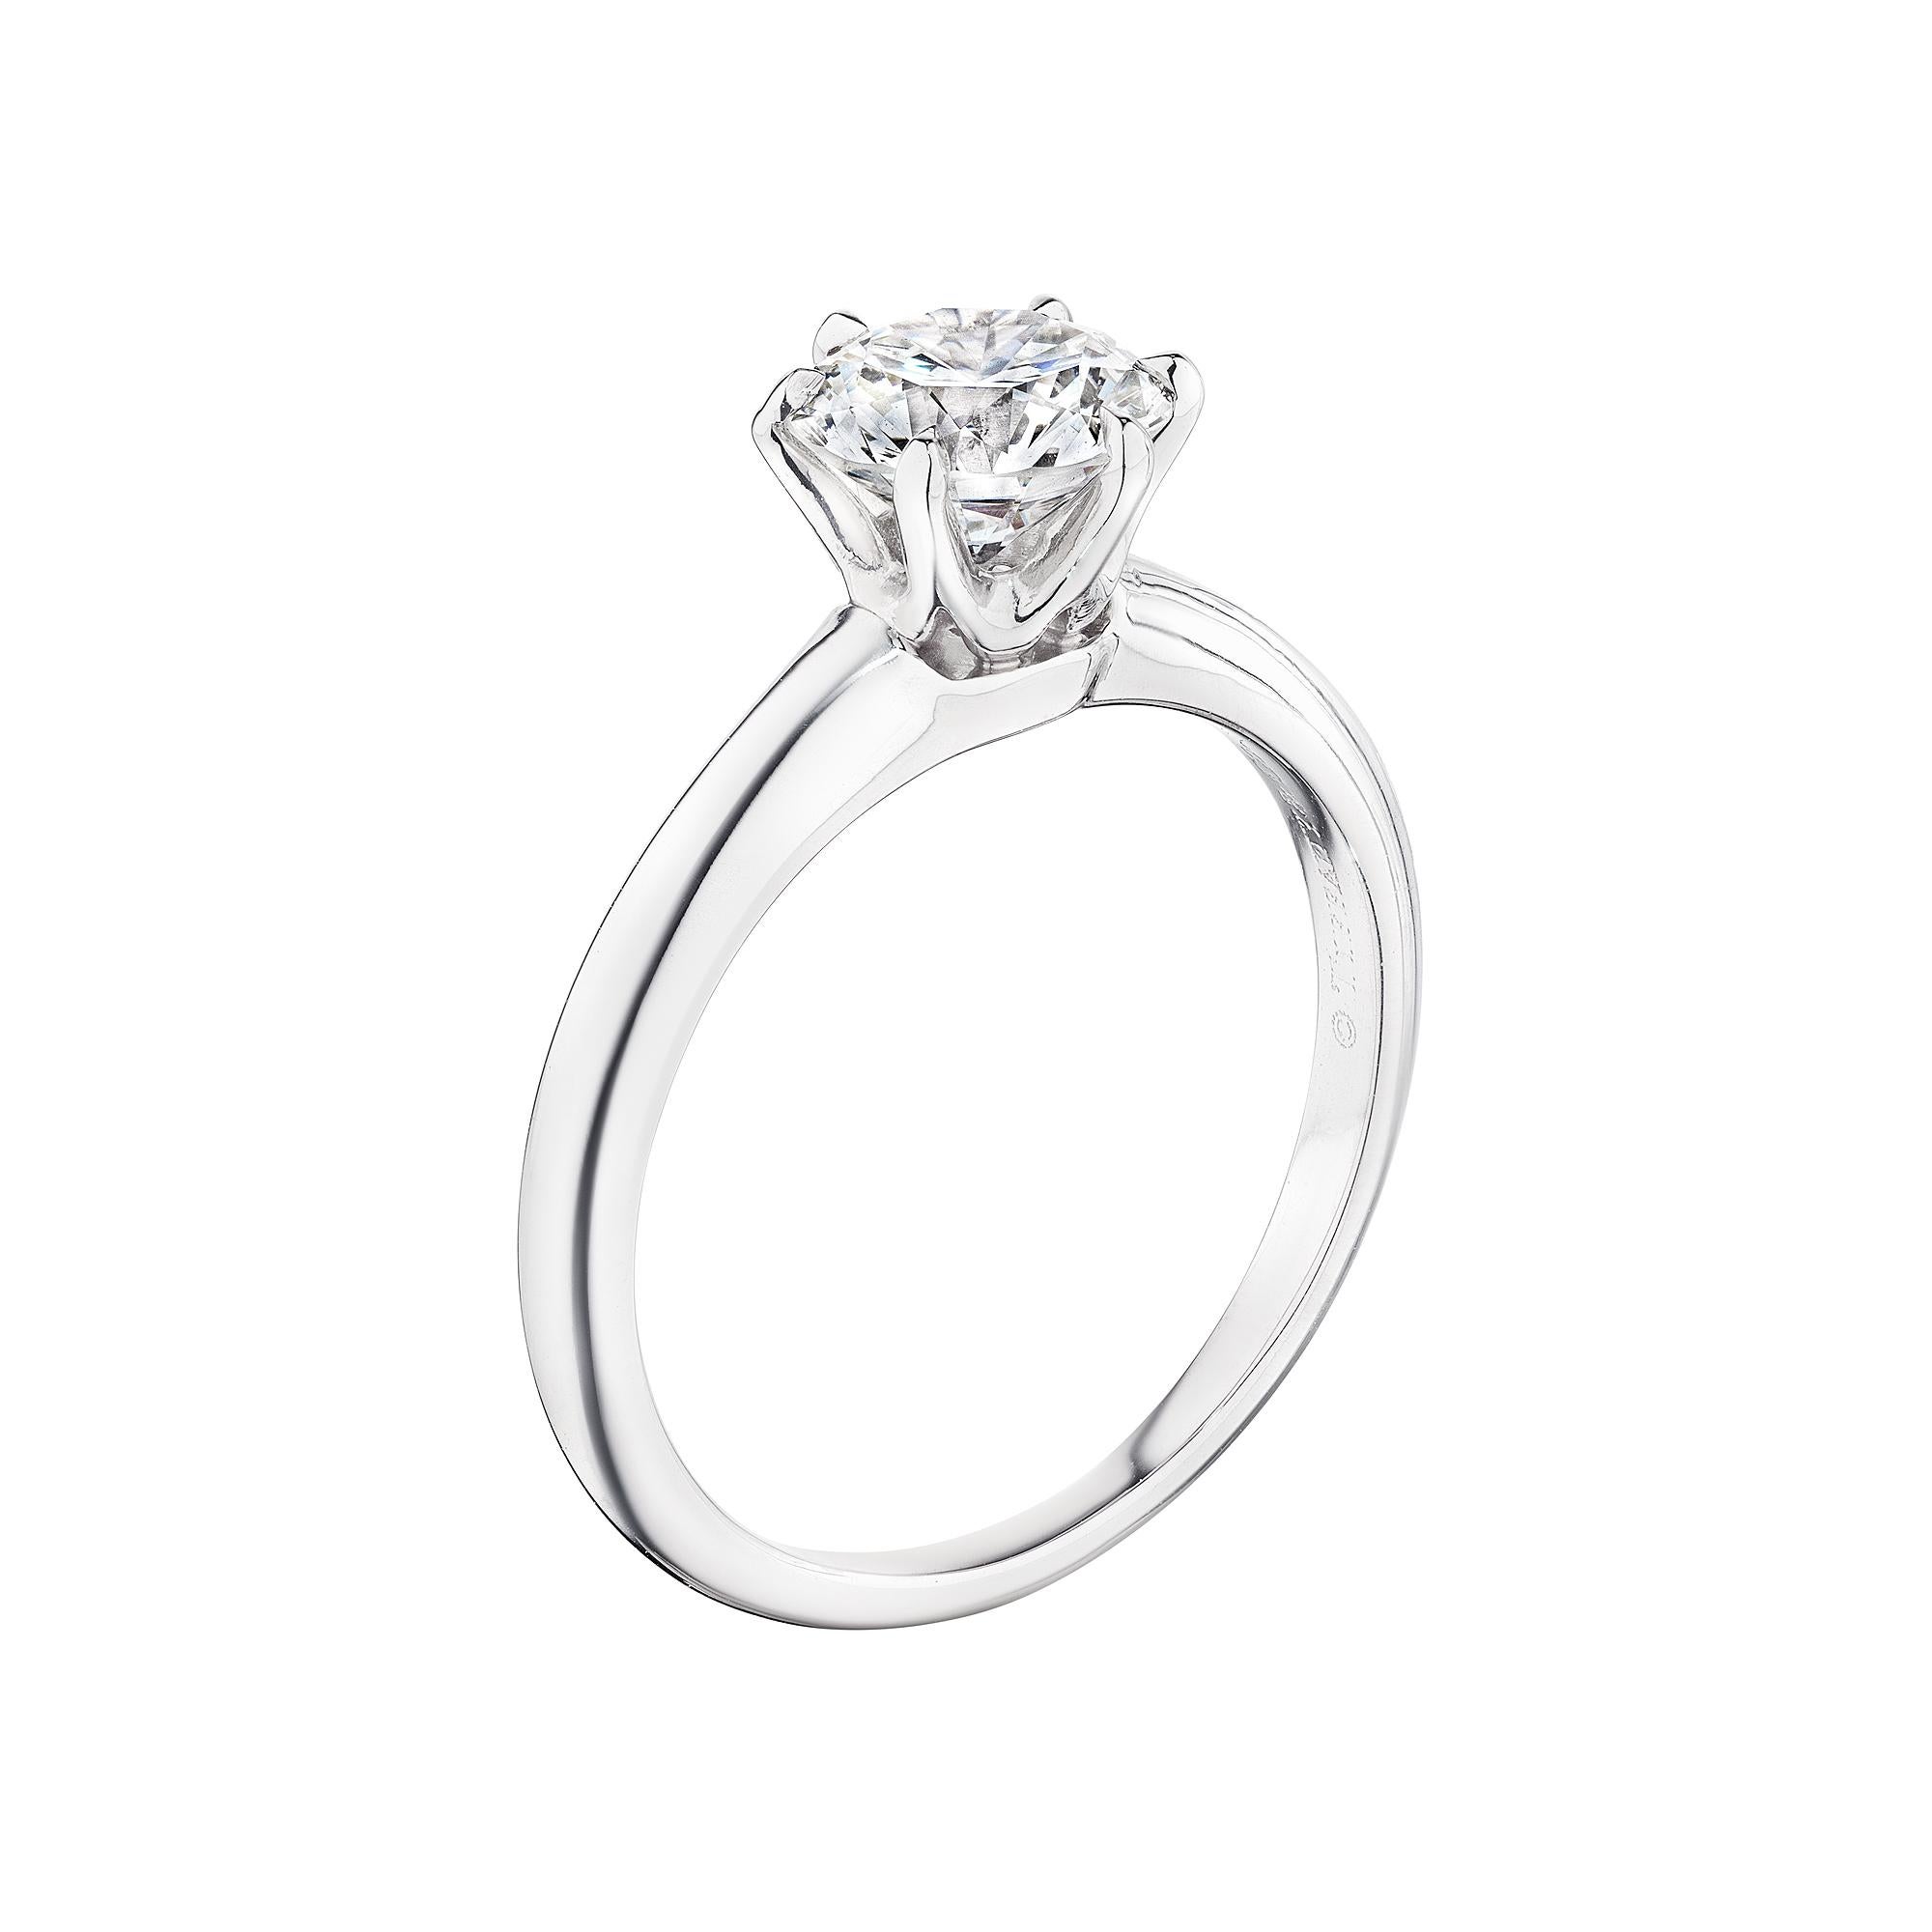 Tout simplement lumineuse.  Cette bague de fiançailles Tiffany & Co. 1,12 diamant rond de taille brillant en platine certifié GIA brille plus que toutes les autres.  Signées Tiffany & Co.  Vers 2003.  Couleur du diamant H.  Clarté VS2.  Numéro de